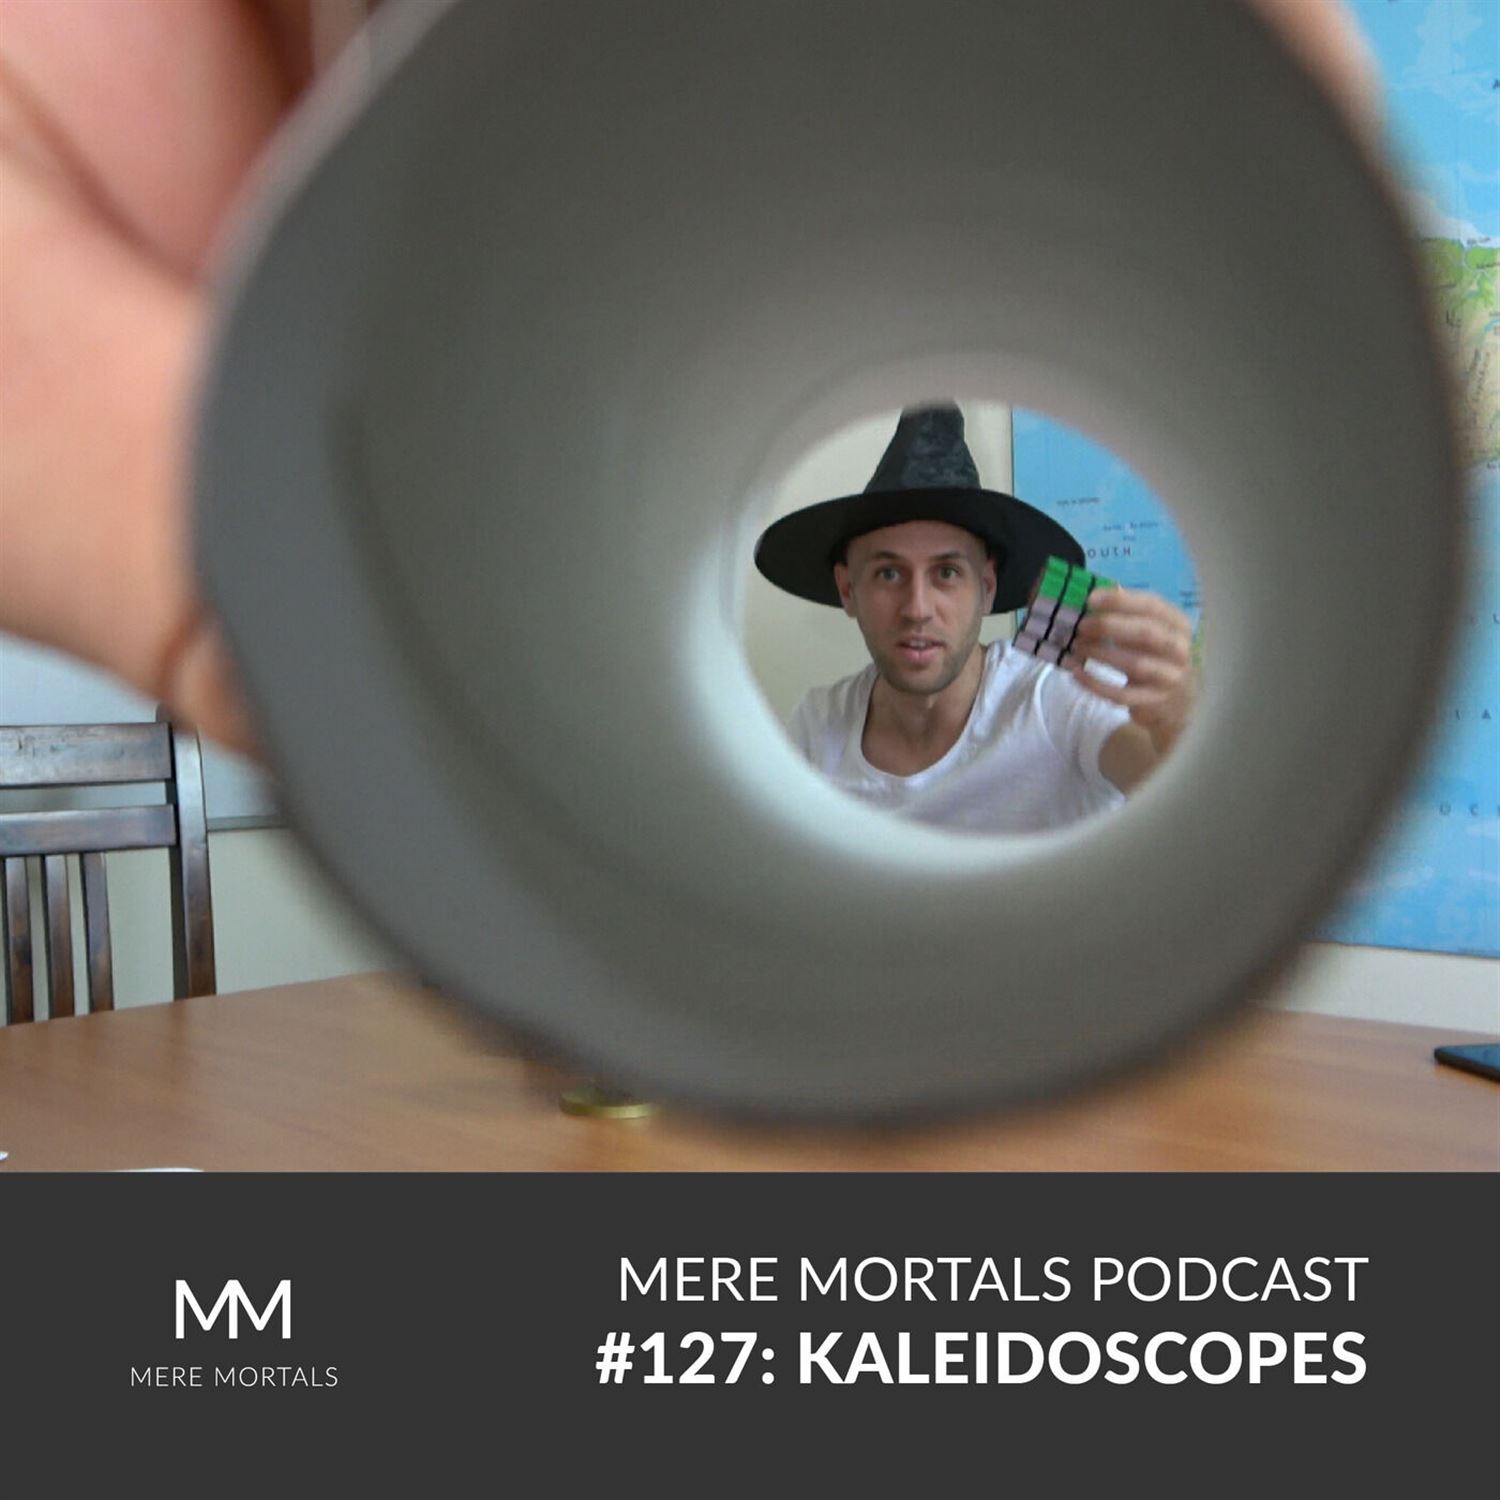 Kaleidoscope Videos On YouTube (Episode #127 - Kaleidoscopes)